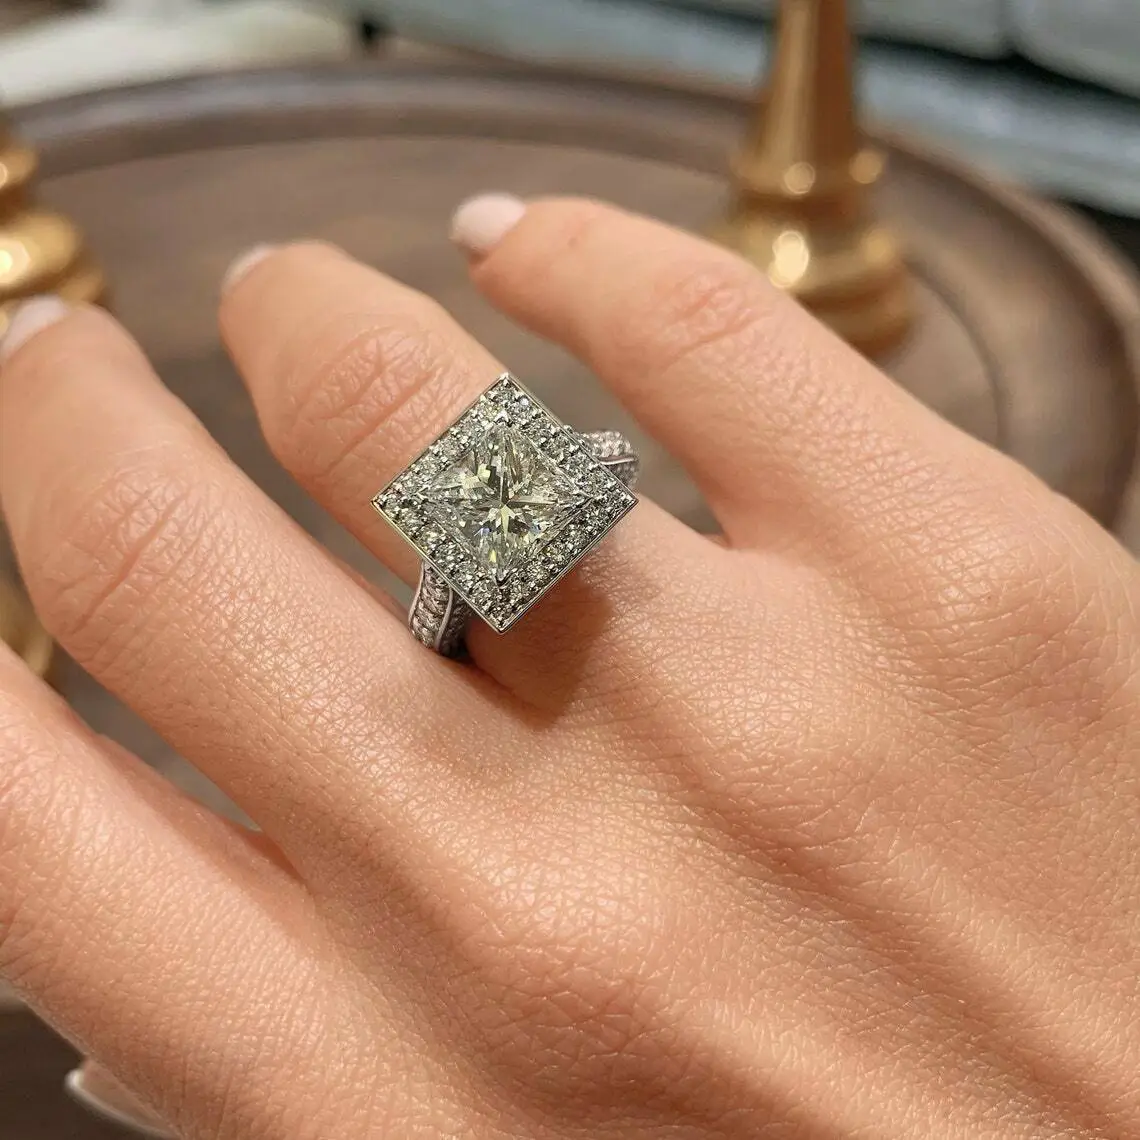 Veronique - 14k White Gold 2 Carat Princess Cut Halo Natural Diamond  Engagement Ring @ $2450 | Gabriel & Co.